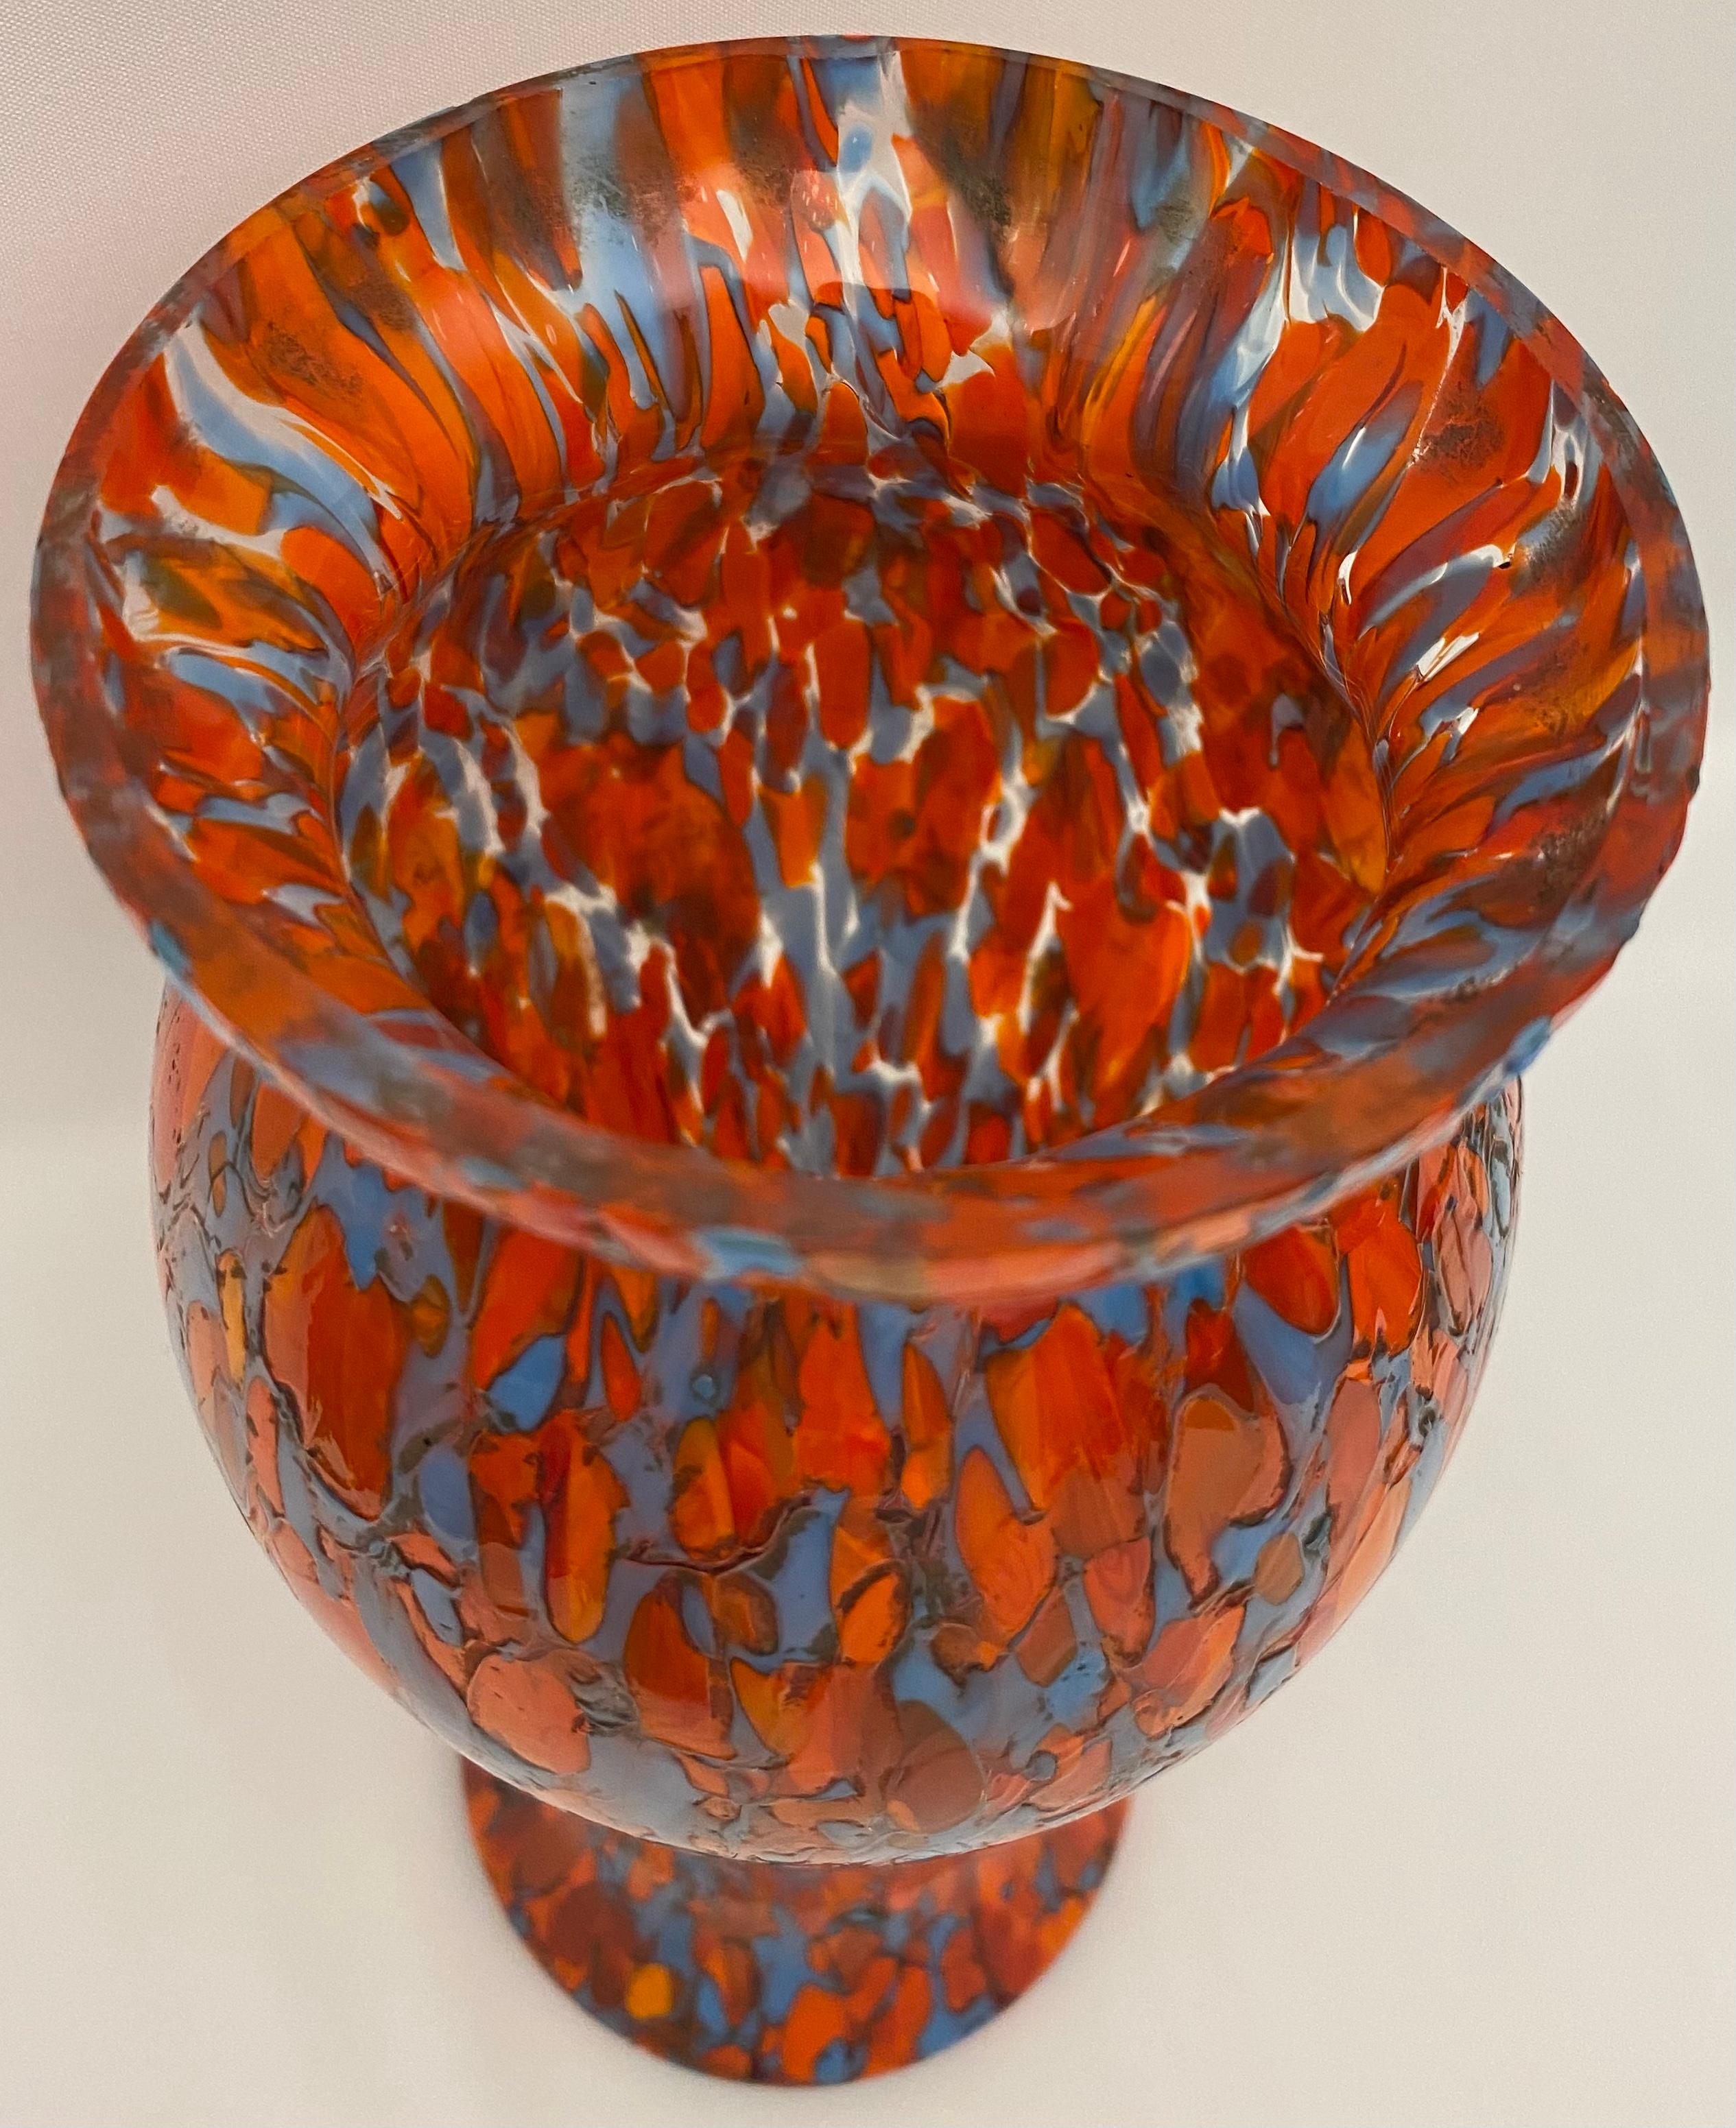 Eine schöne mehrfarbige französische Vase aus mundgeblasenem Kunstglas im Stil des Art déco. 
Wunderschöne Details und sehr guter Zustand. 

Würde jede Umgebung aufwerten. 
Maße: 10 1/4